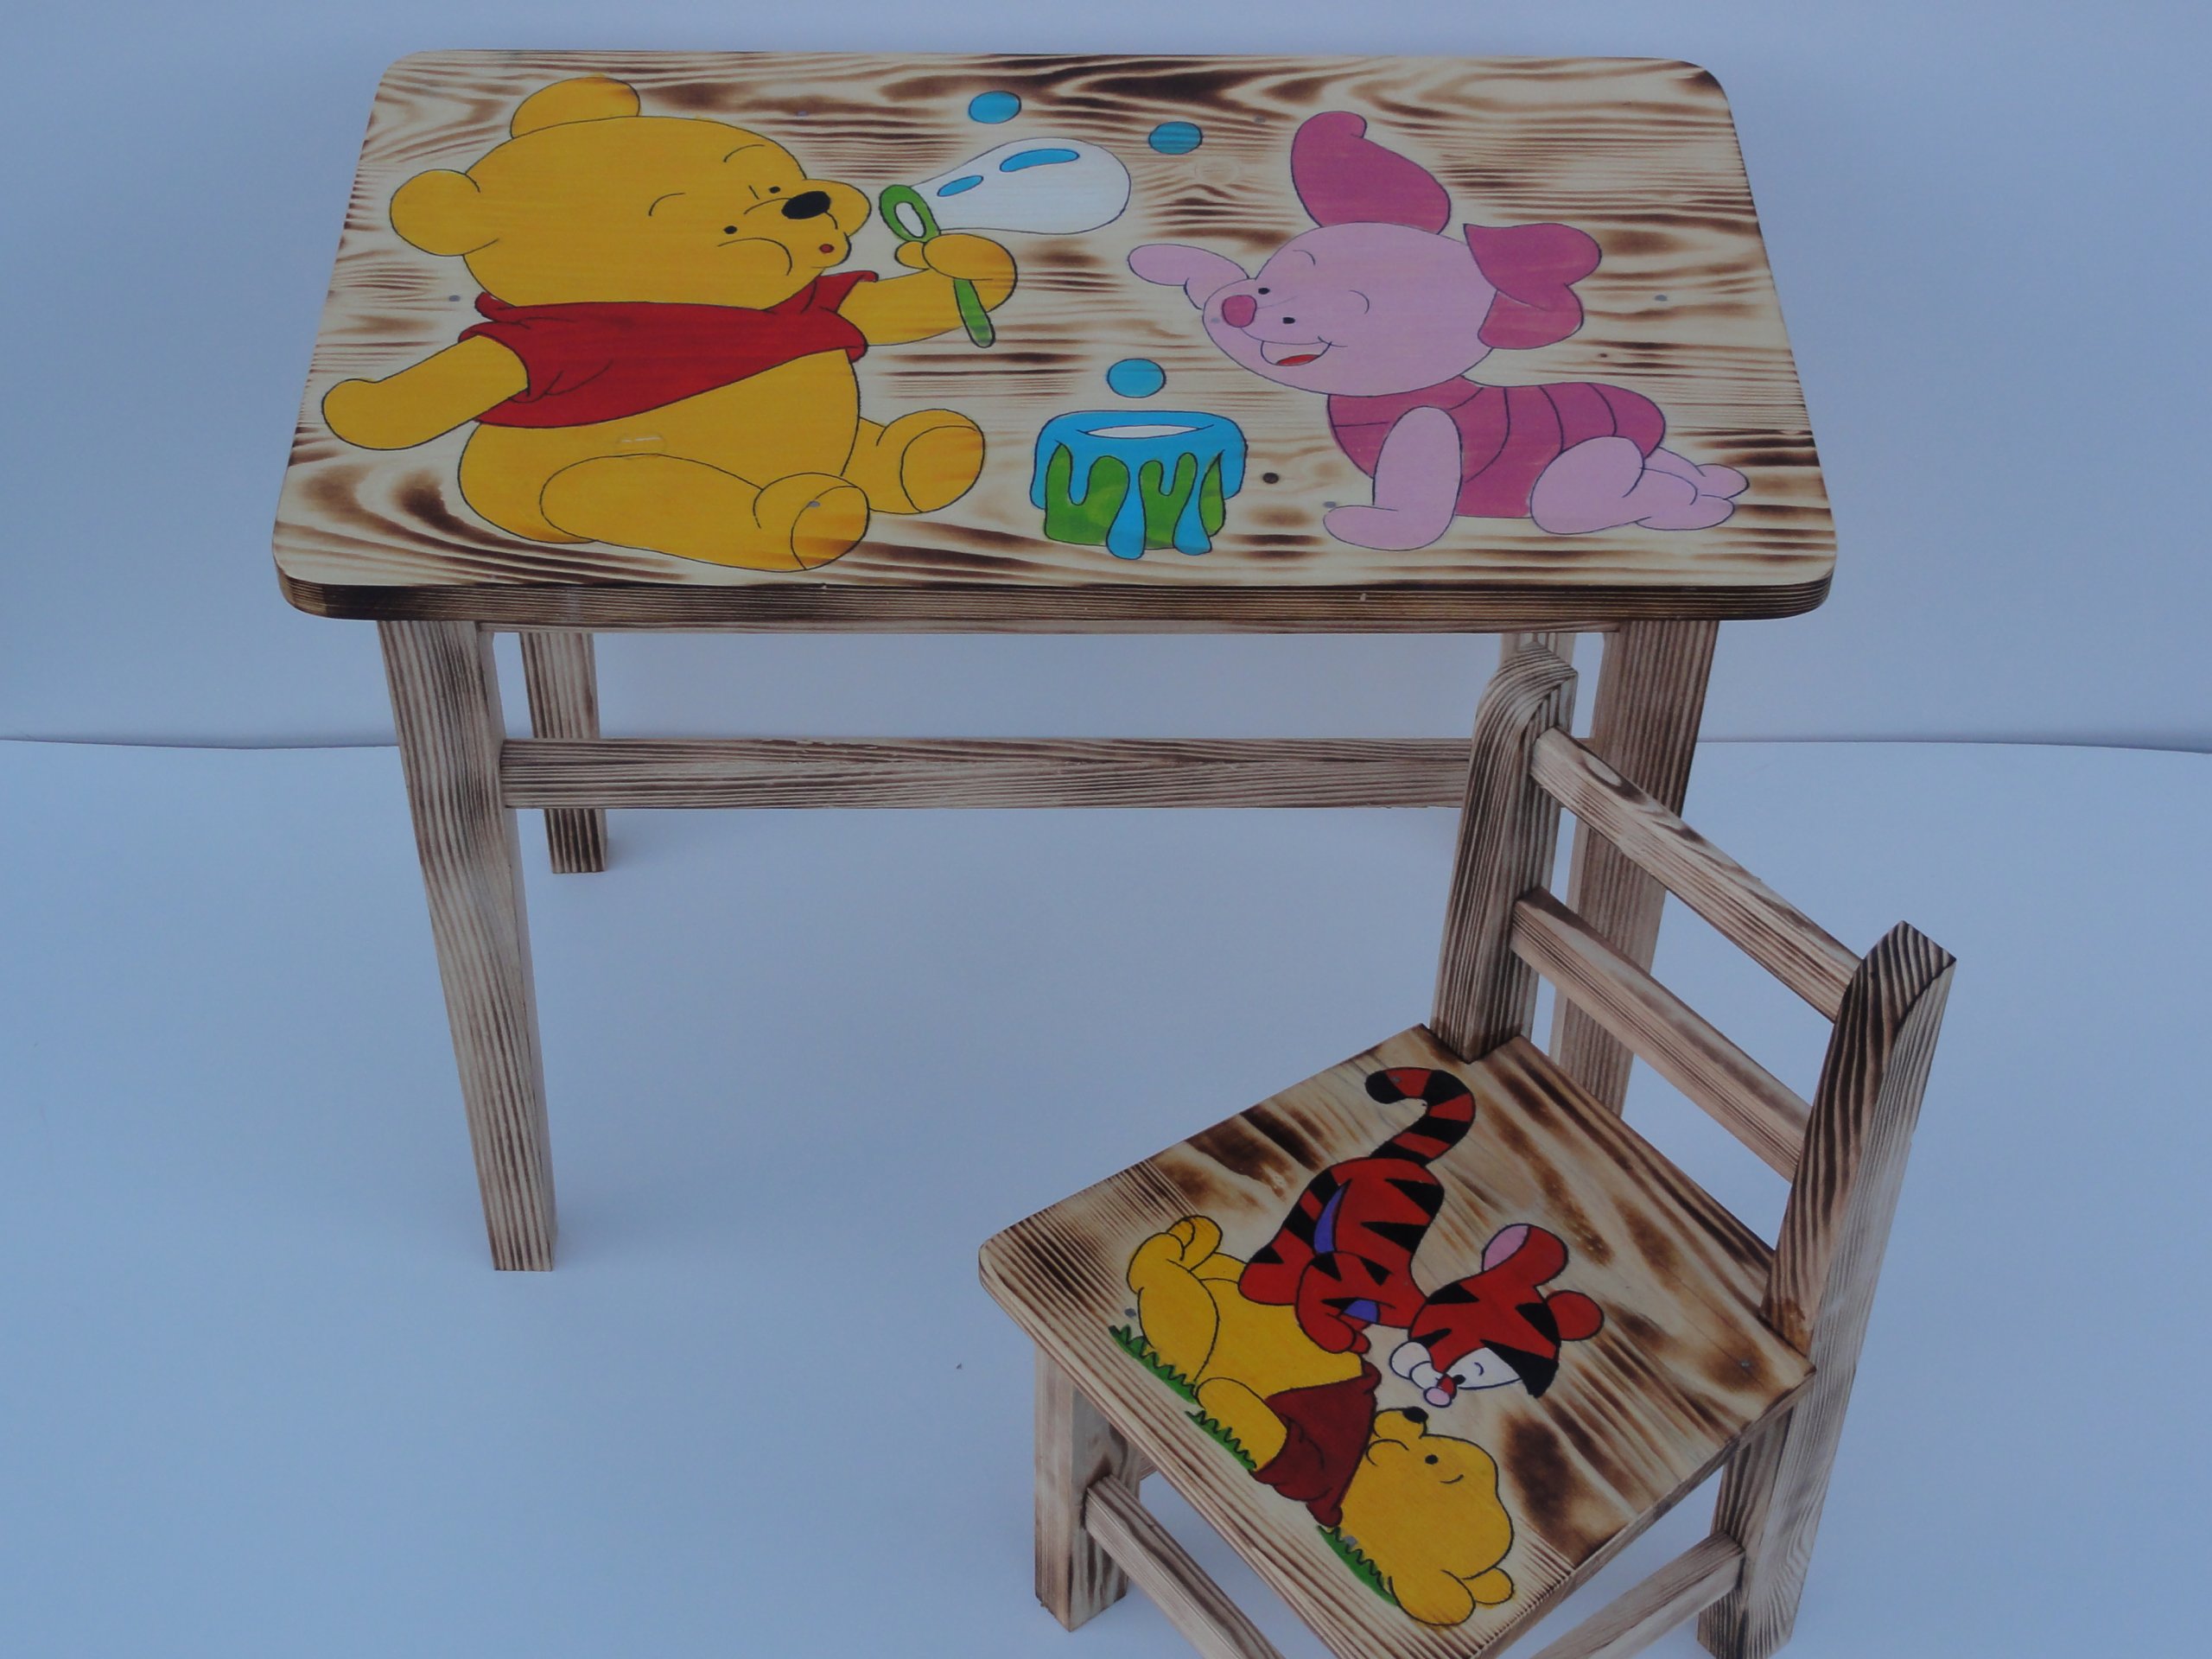 столик со стульчиком для детей от 1 года деревянный